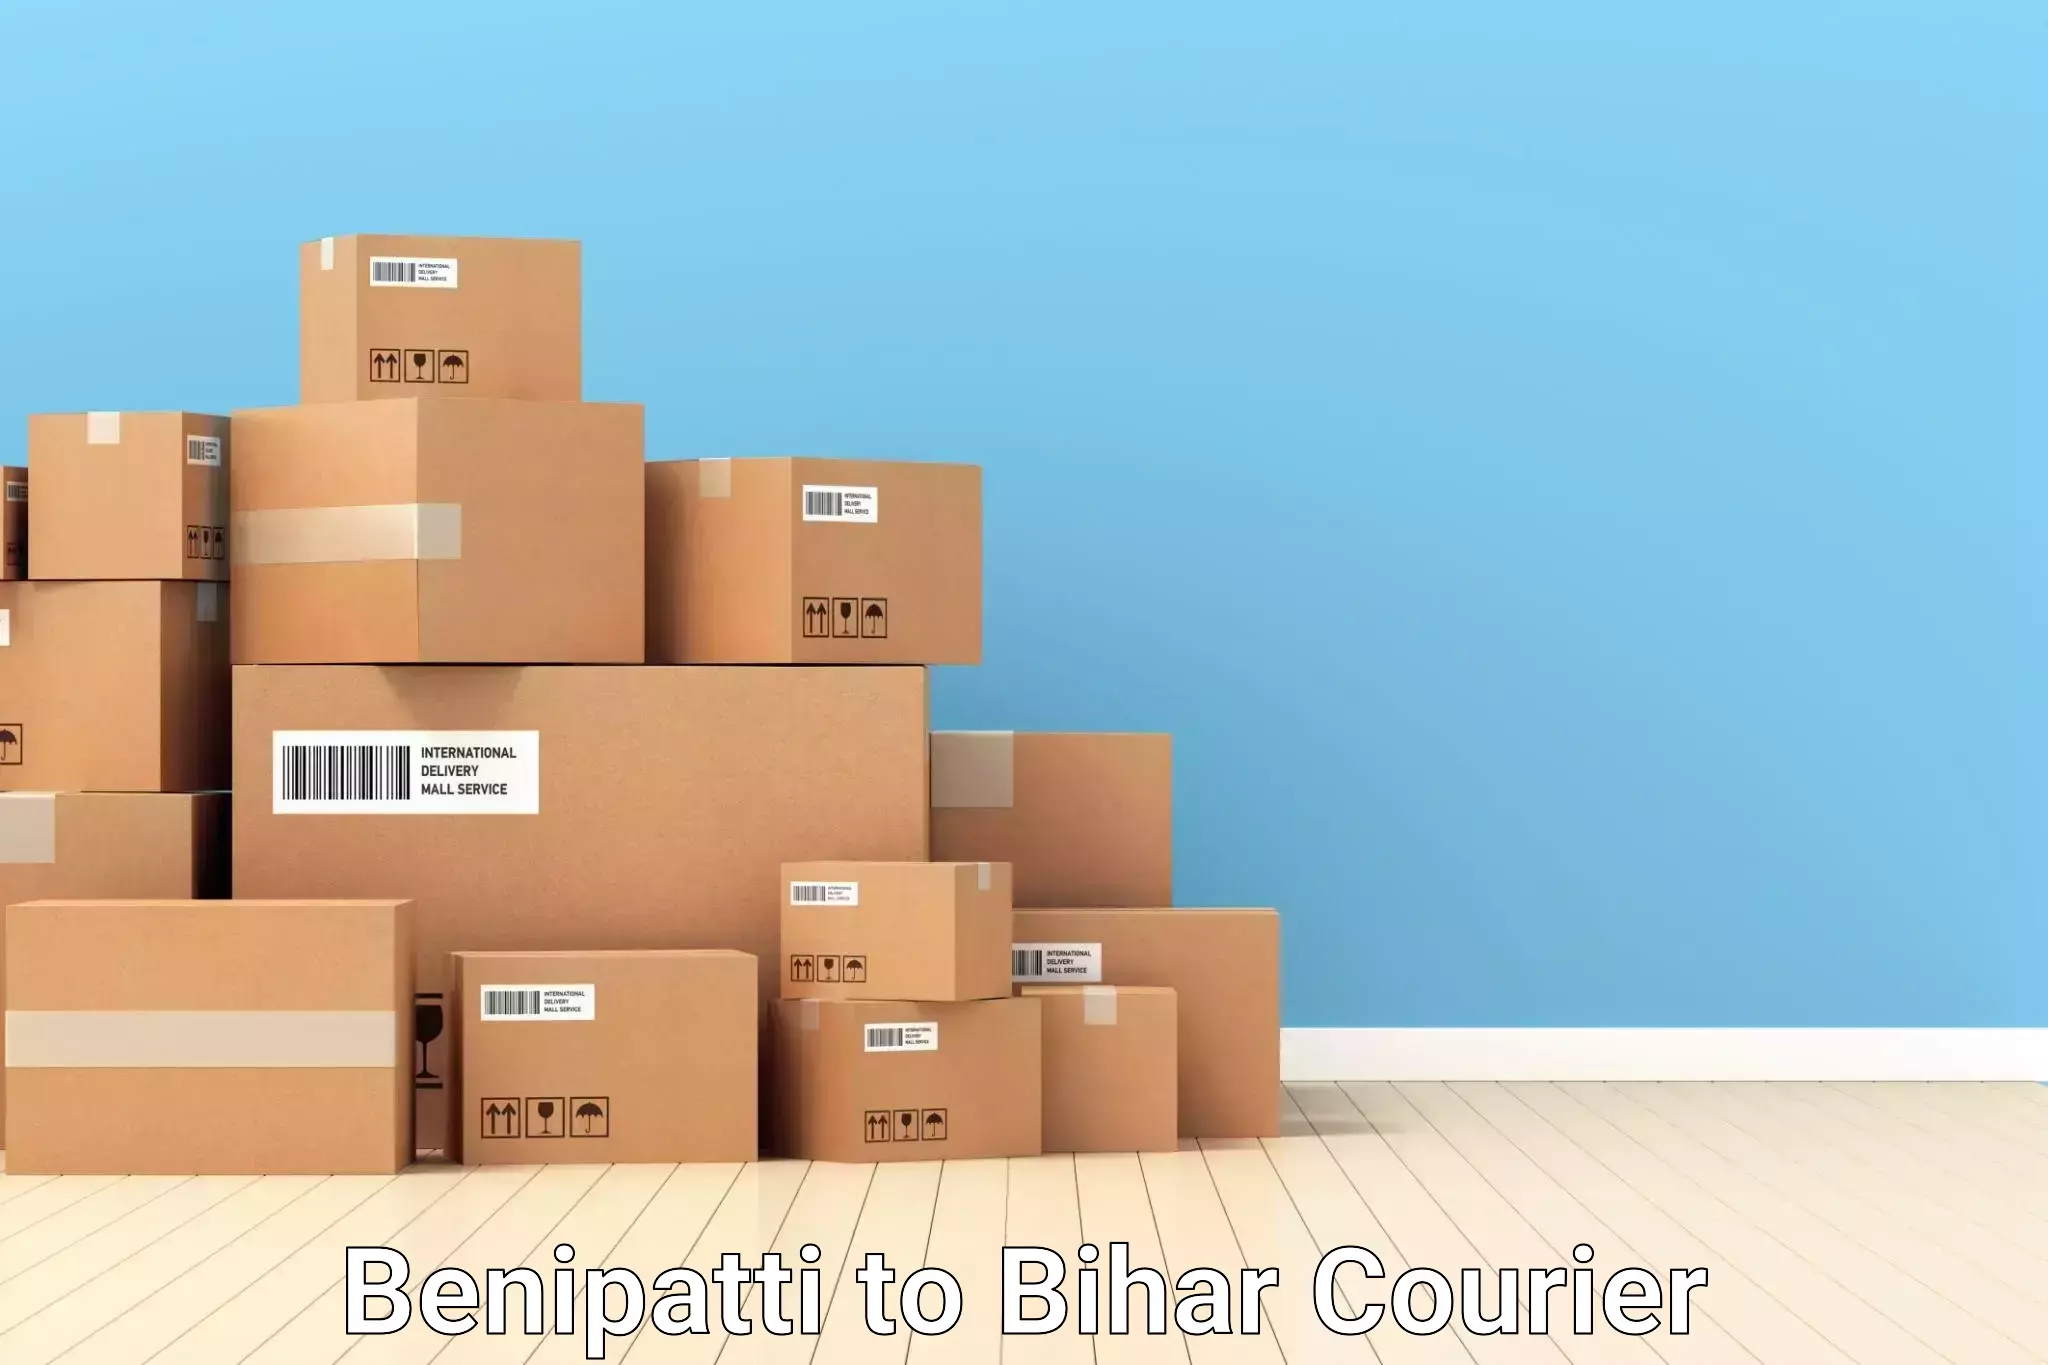 Door-to-door baggage service Benipatti to Bihar